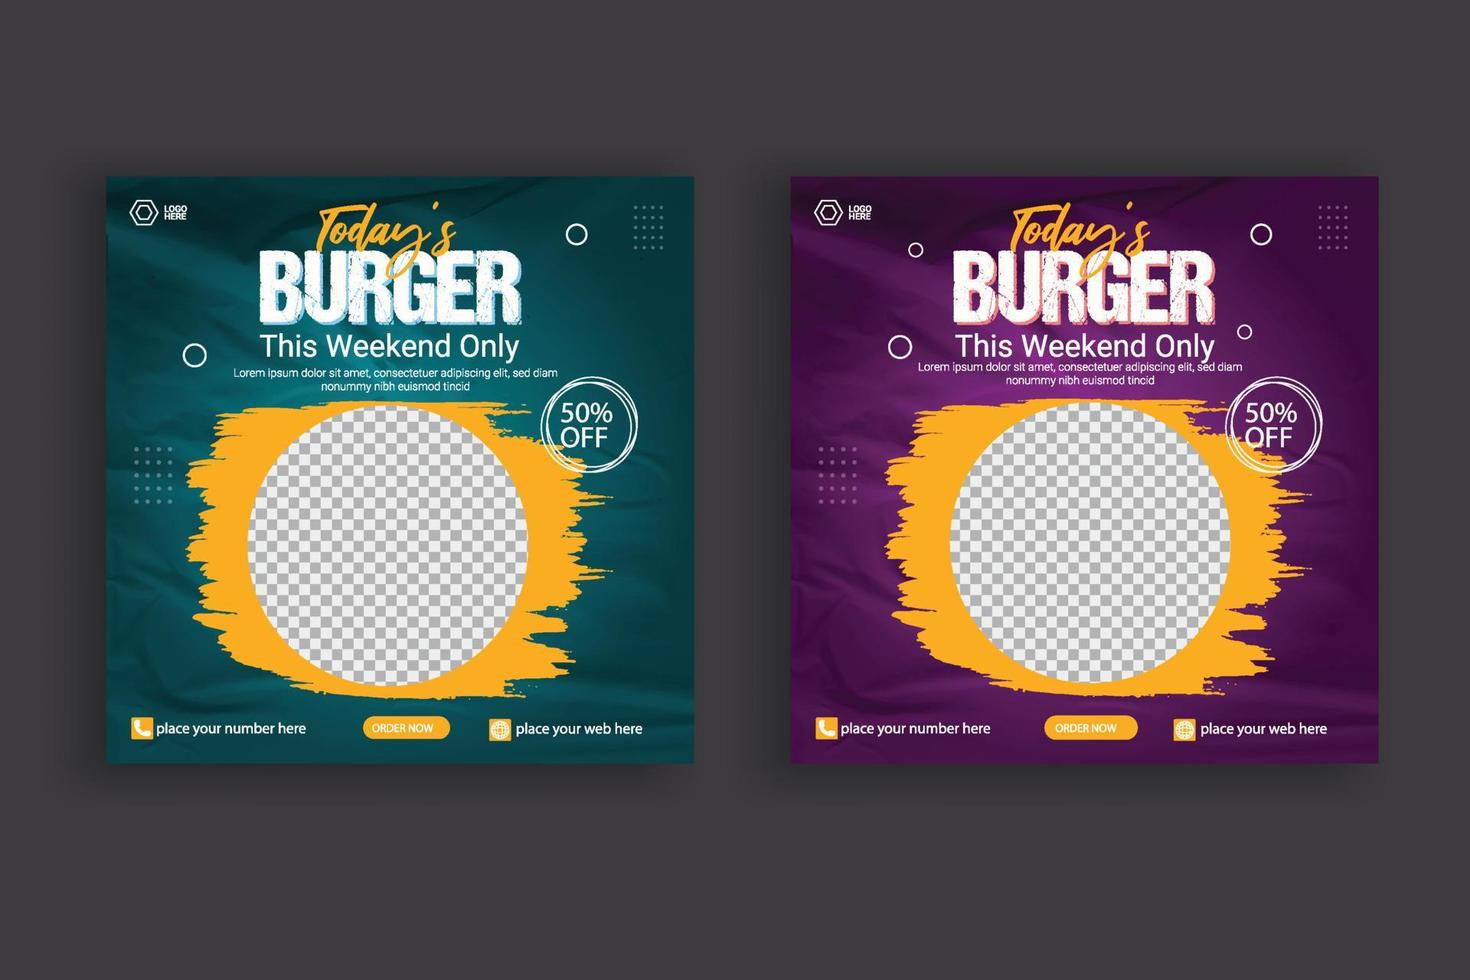 cibo sociale media inviare modello per cibo promozione semplice bandiera design vettore